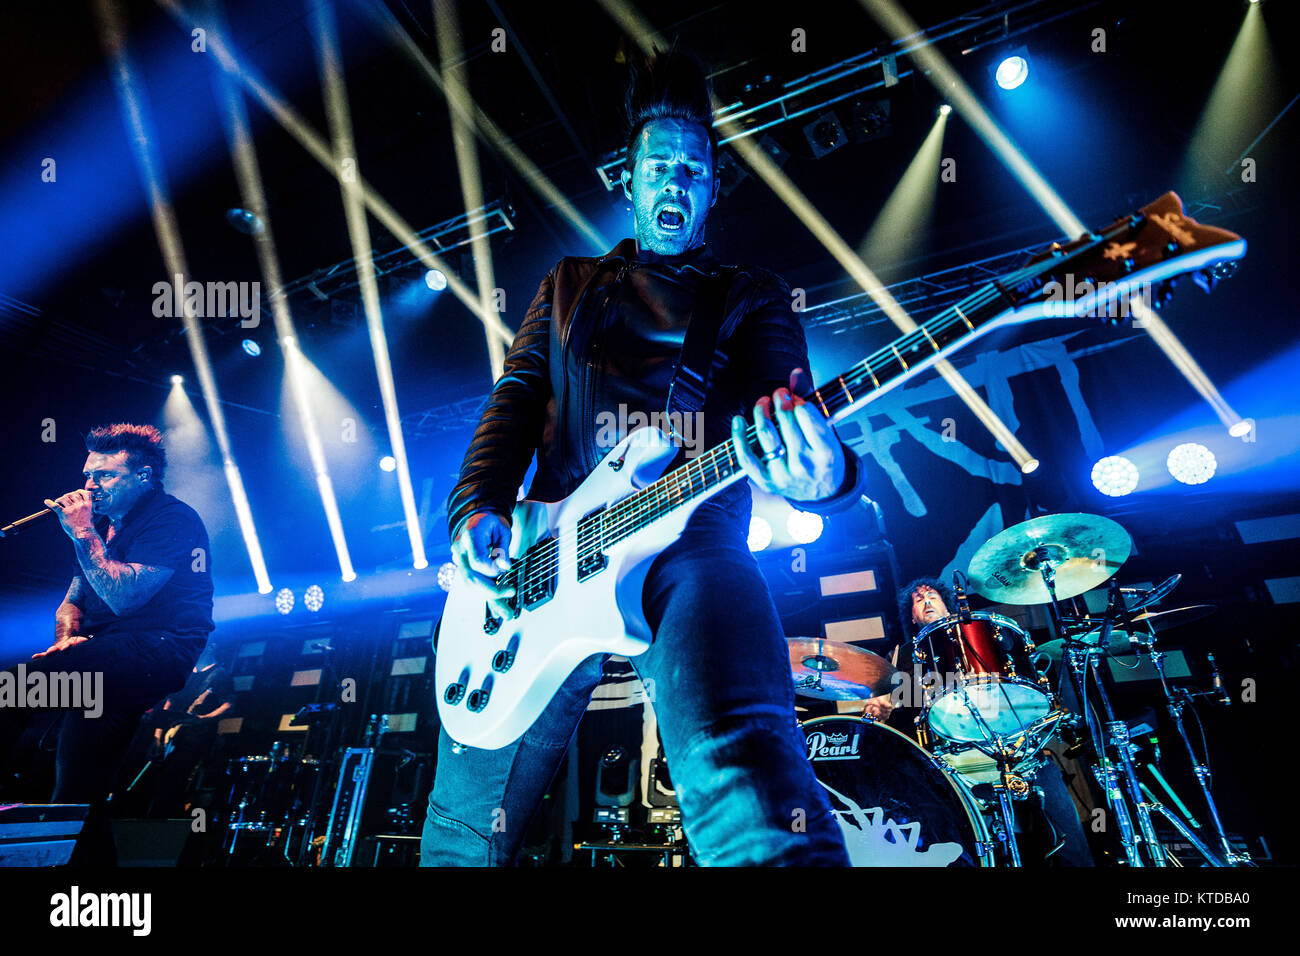 Danemark, copenhague - 22 octobre 2017. Le groupe de metal américain de rock Papa Roach effectue un concert live à Amager Bio à Copenhague. Ici le guitariste Jerry Horton est vu sur scène. (Photo crédit : Gonzales Photo - Peter Troest). Banque D'Images